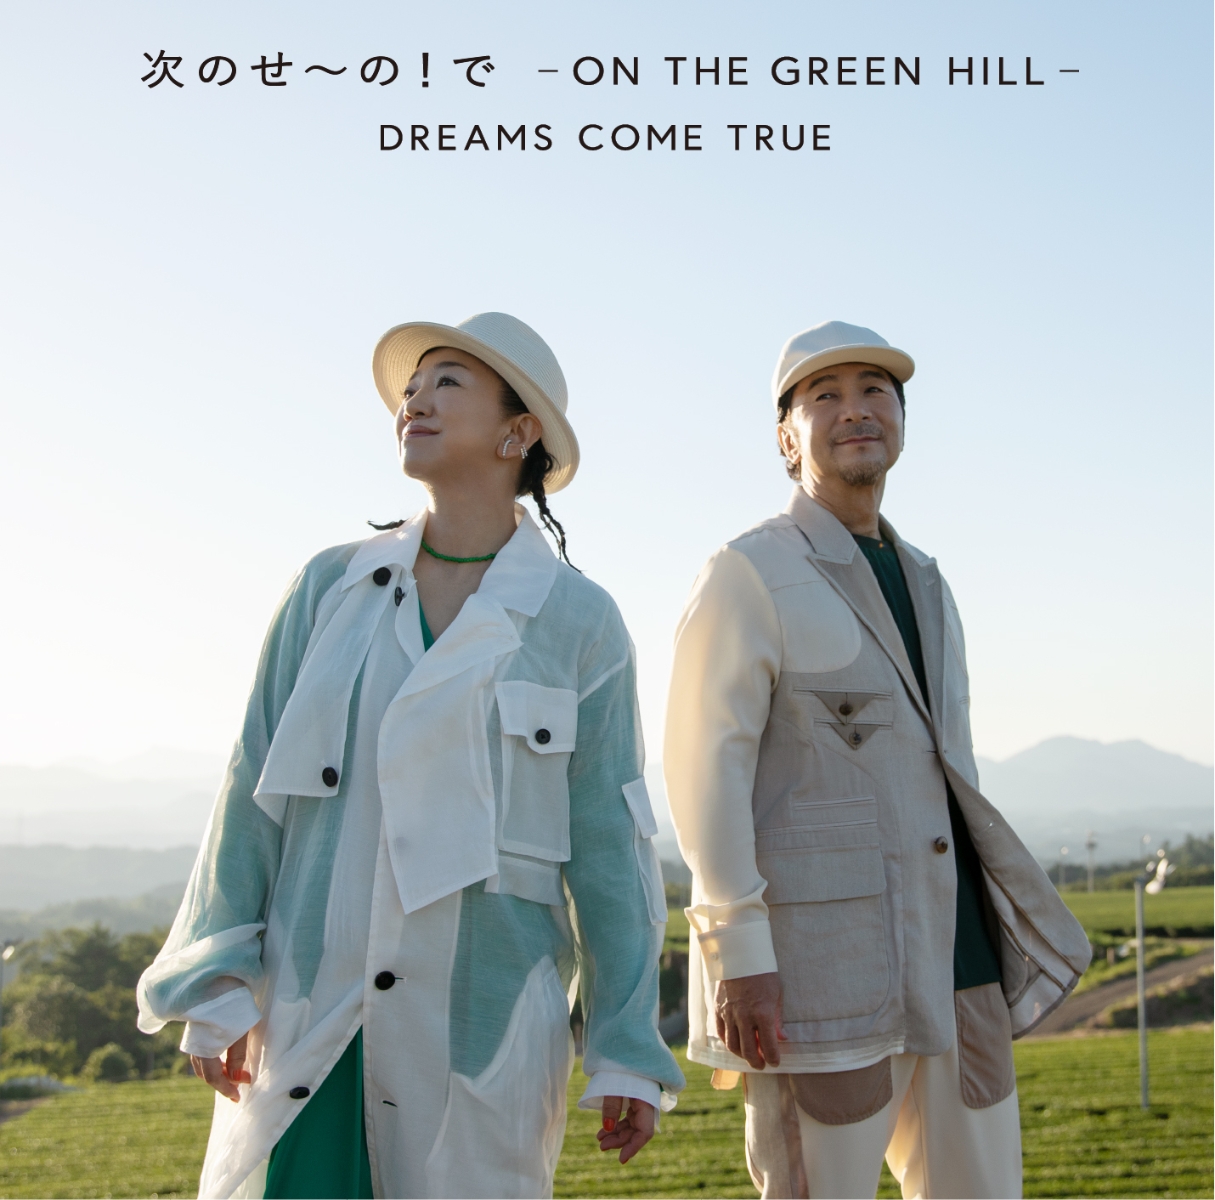 次のせ～の！で　- ON THE GREEN HILL - [ DREAMS COME TRUE ]